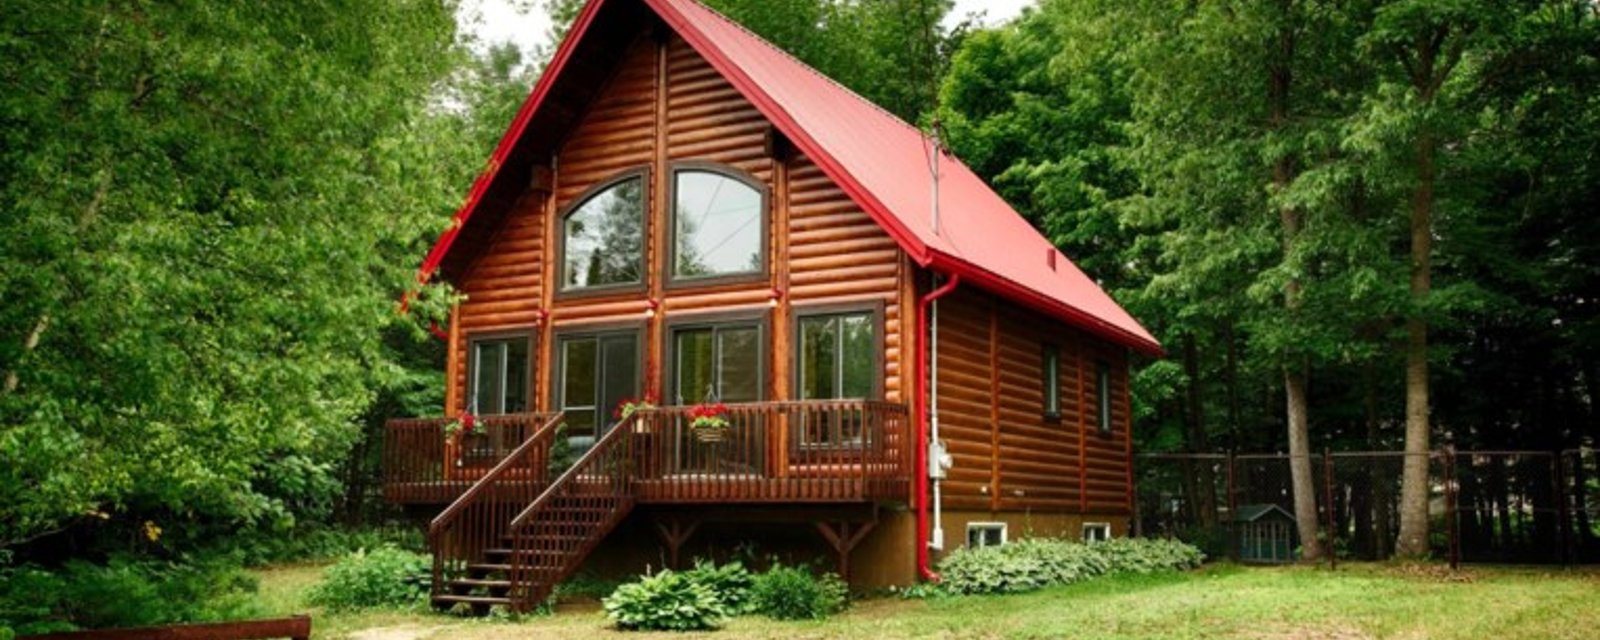 Magnifique maison en bois rond aux finitions haute gamme aux abords d’un lac paisible : un véritable havre de paix à votre portée! 